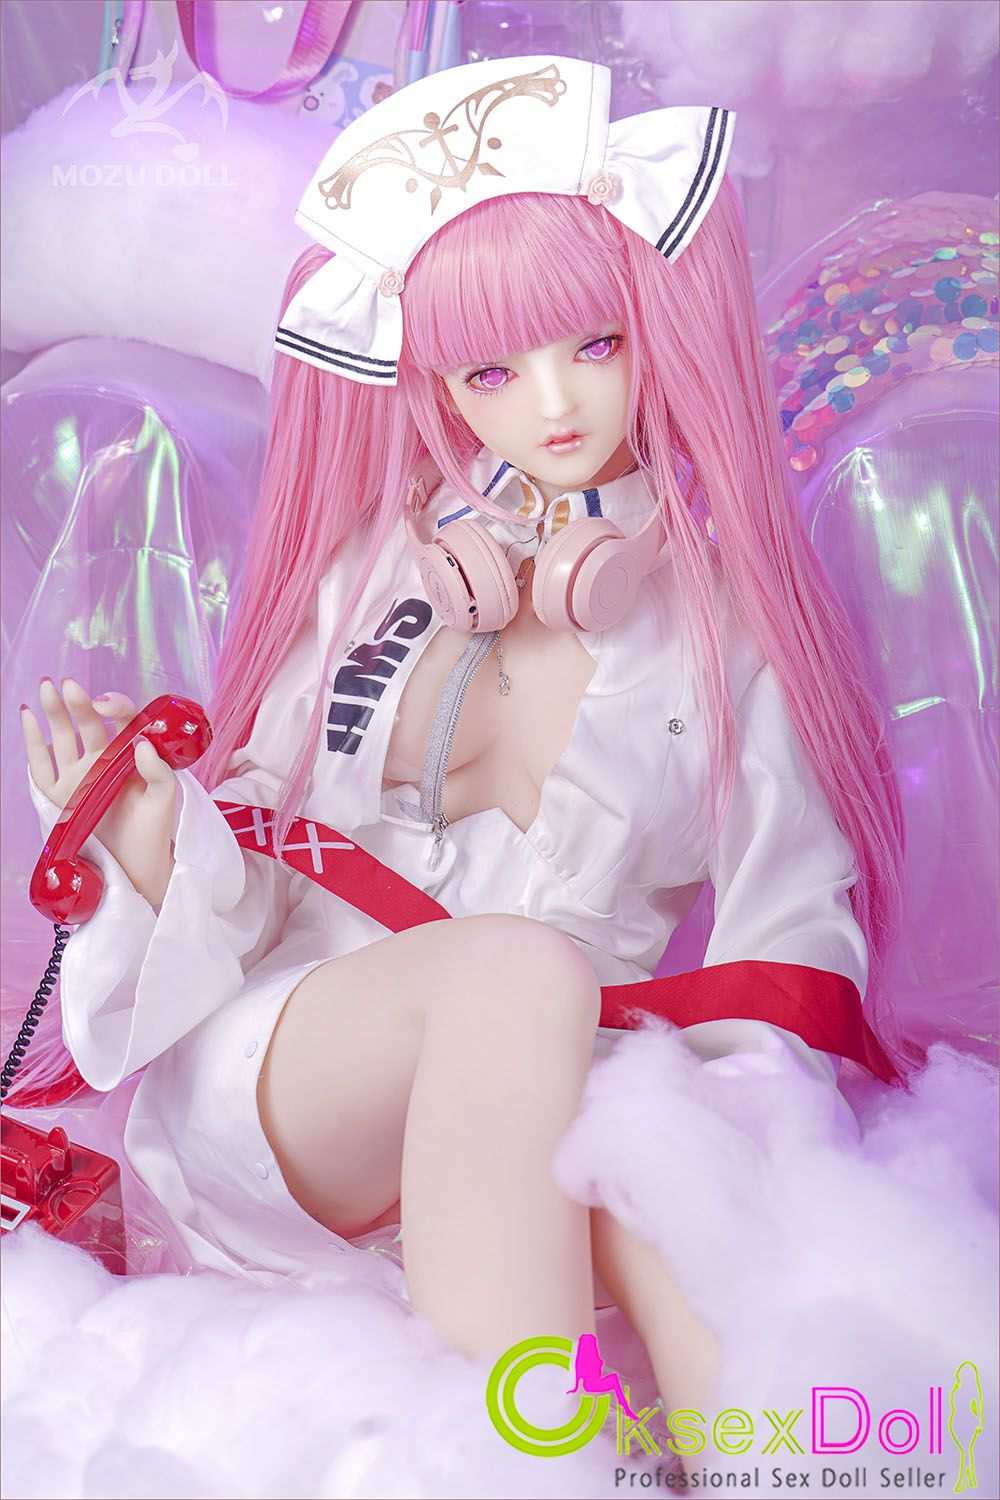 B-cup Anime Figure Sex Doll Photos